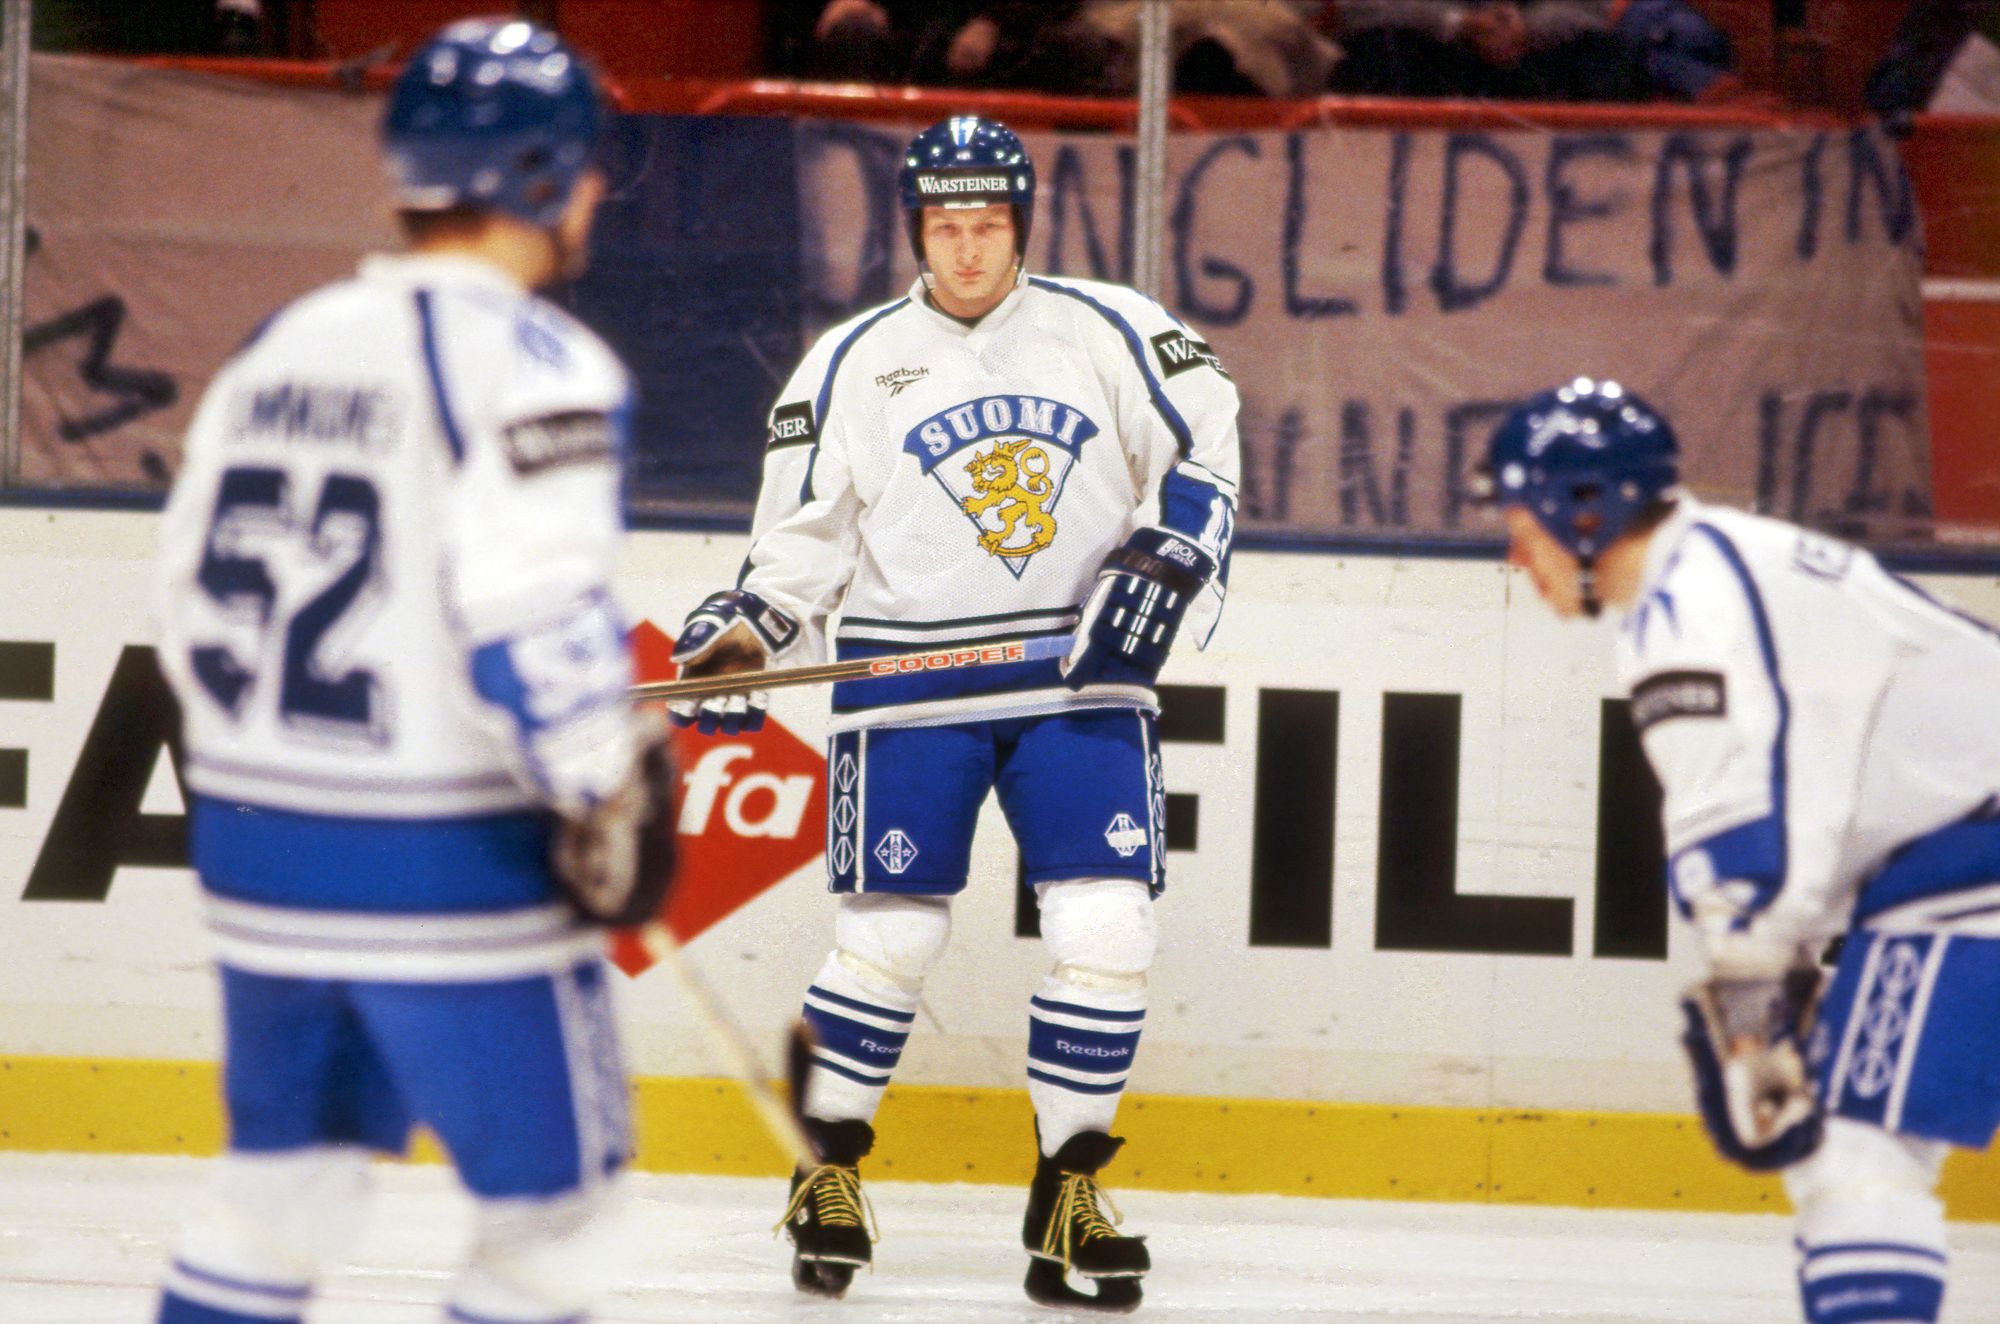 1990-luvulla Euroopan huippupelaajien joukkoon kuulunut Palo muistetaan erityisesti vuonna 1995 jääkiekon maailman­mestaruuden voittaneista Leijonista. © Hannu Lindroos / Jääkiekkomuseo